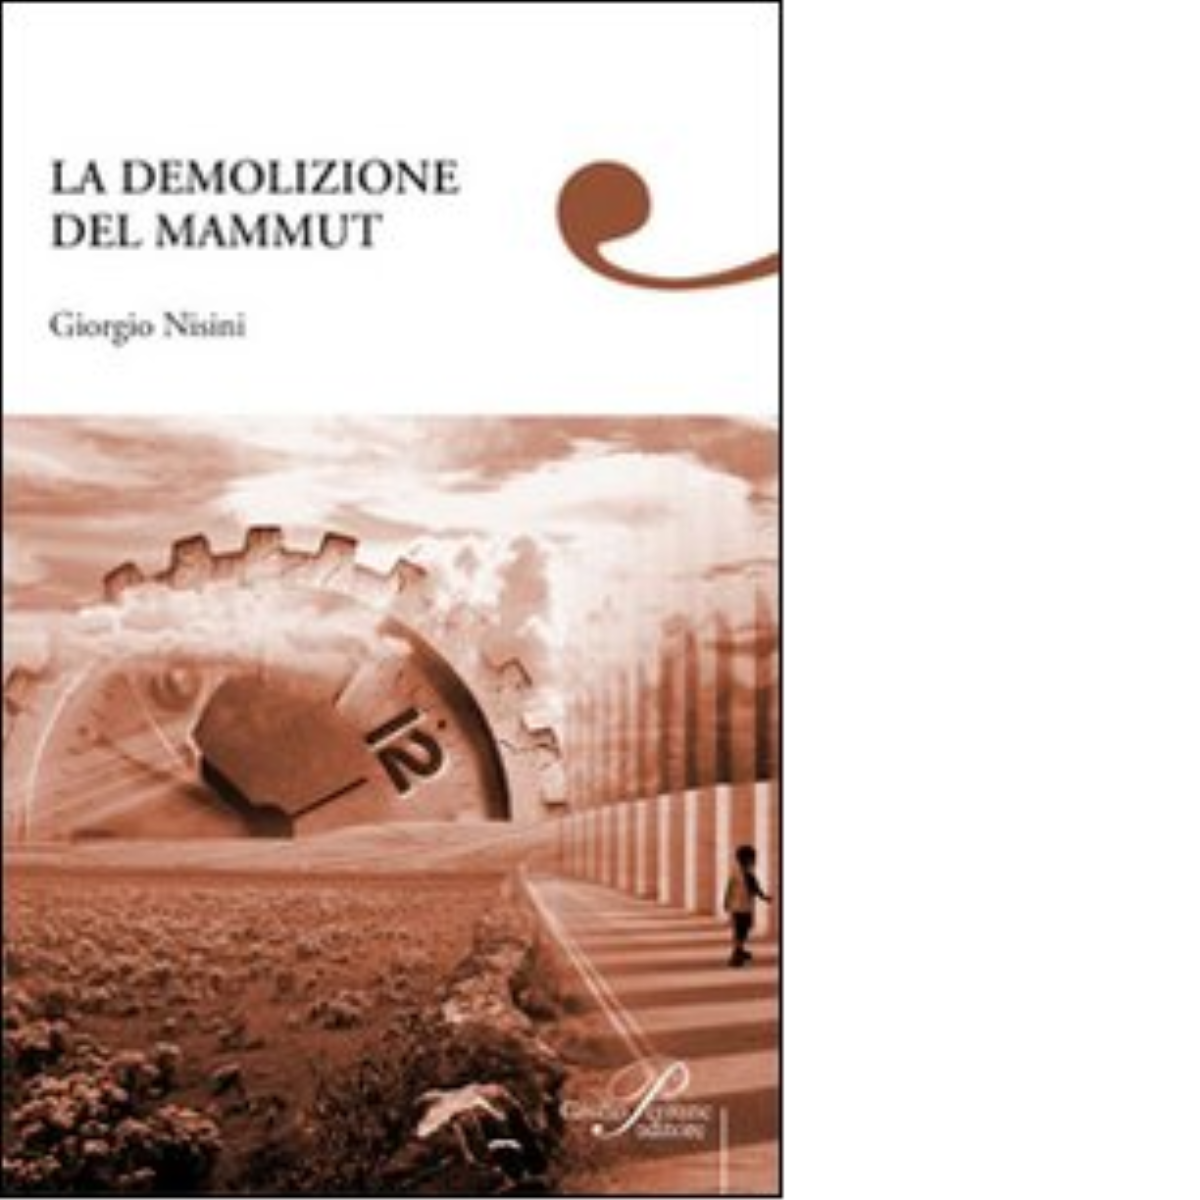 La demolizione del mammut - Giorgio Nisini - Perrone editore, 2008